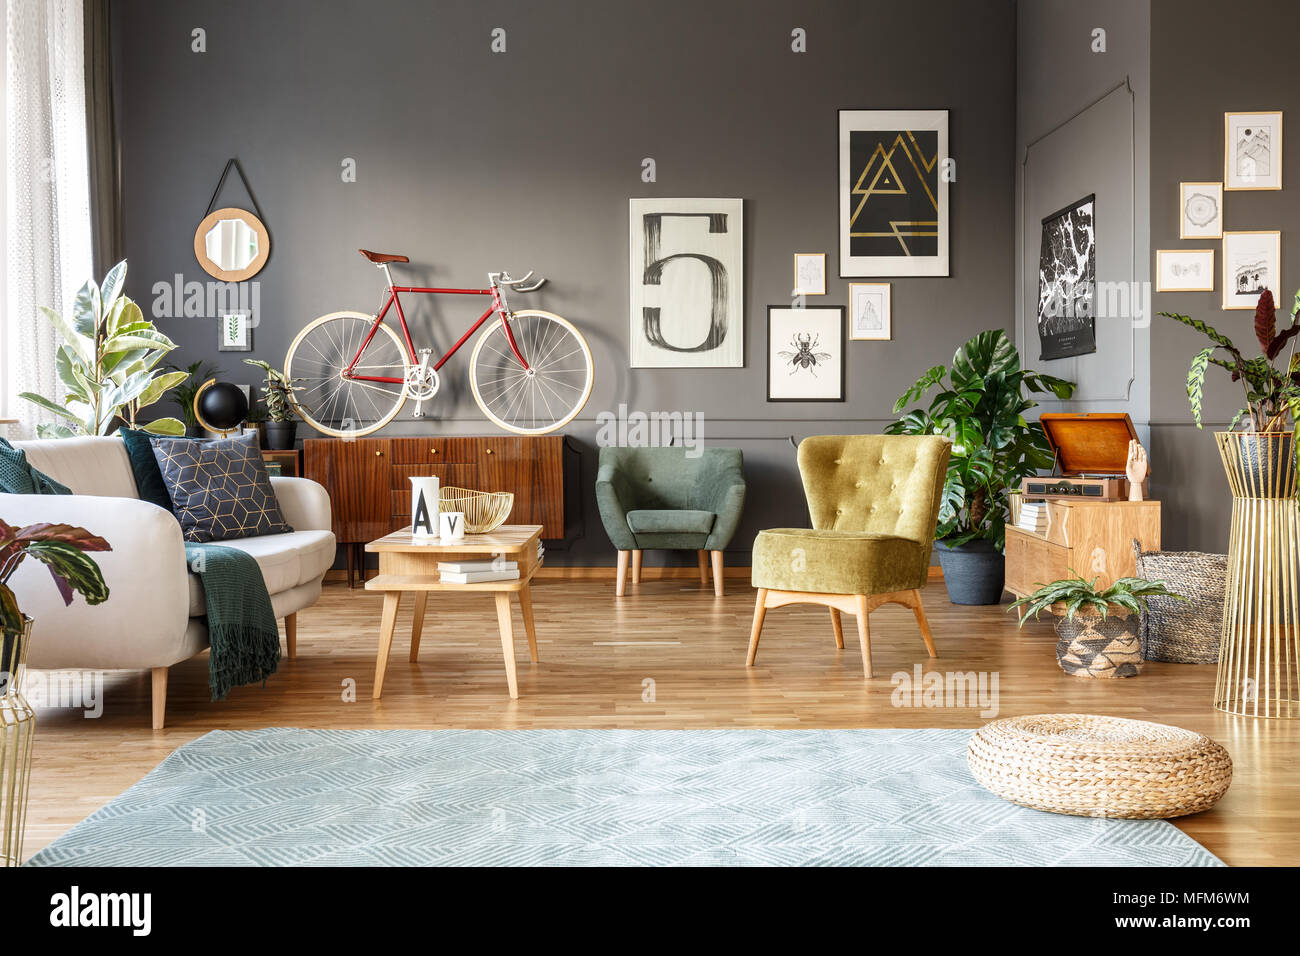 Pouf sur tapis gris en grand salon intérieur avec des fauteuils verts, affiches et red bike Banque D'Images